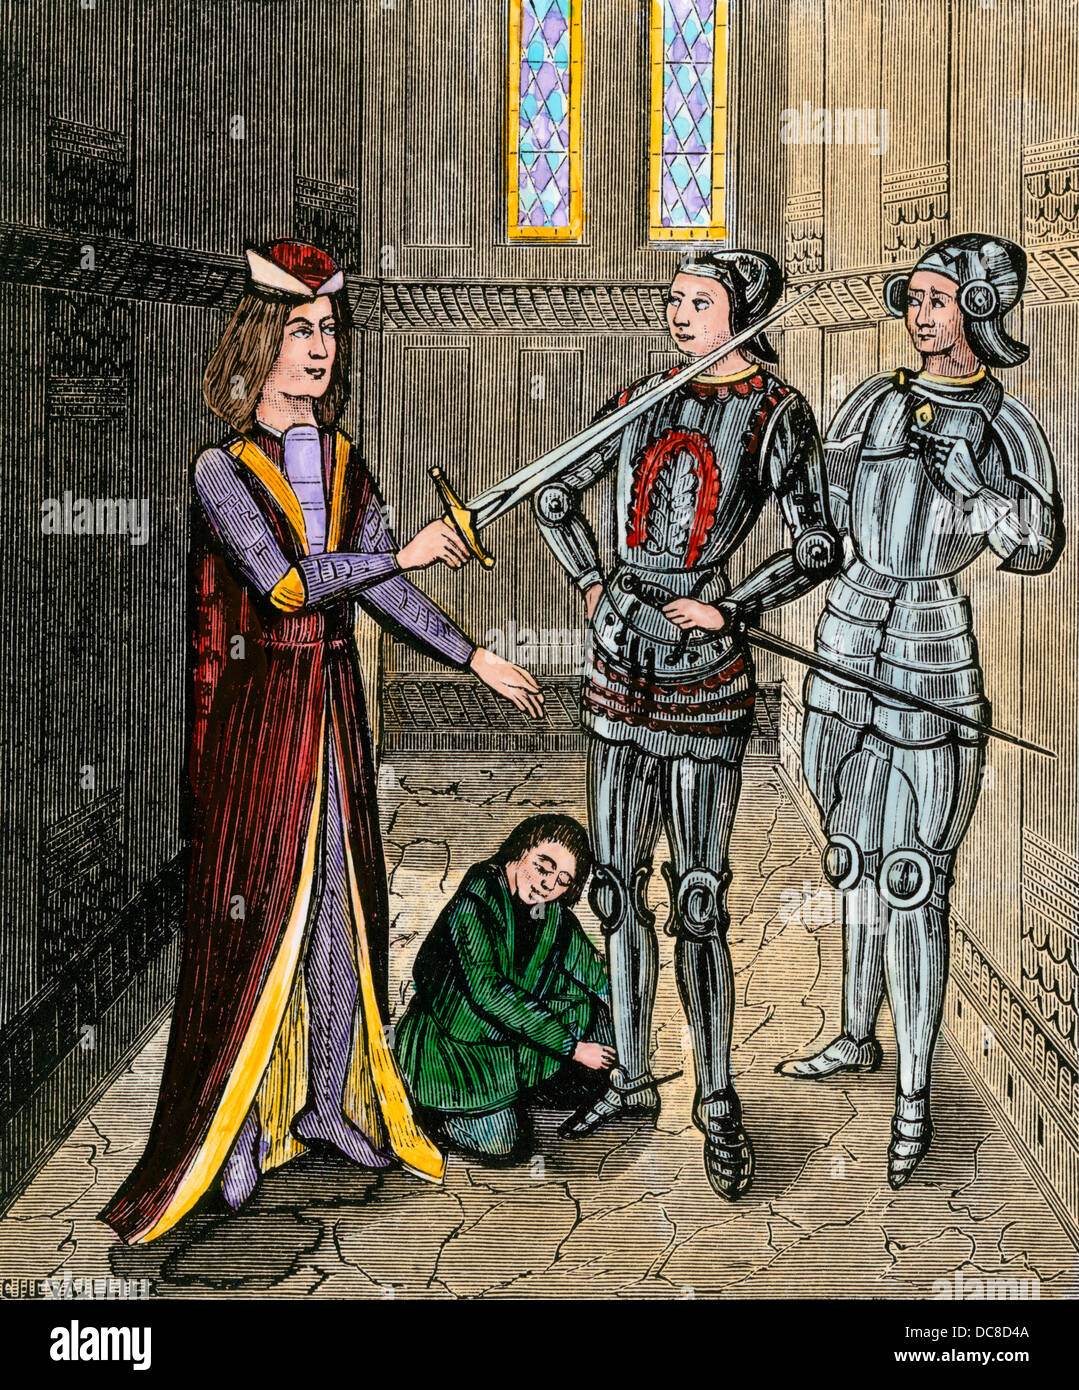 L'armement d'un chevalier, d'une cérémonie qui s'est dit d'avoir été institué par le roi Arthur. À la main, gravure sur bois Banque D'Images